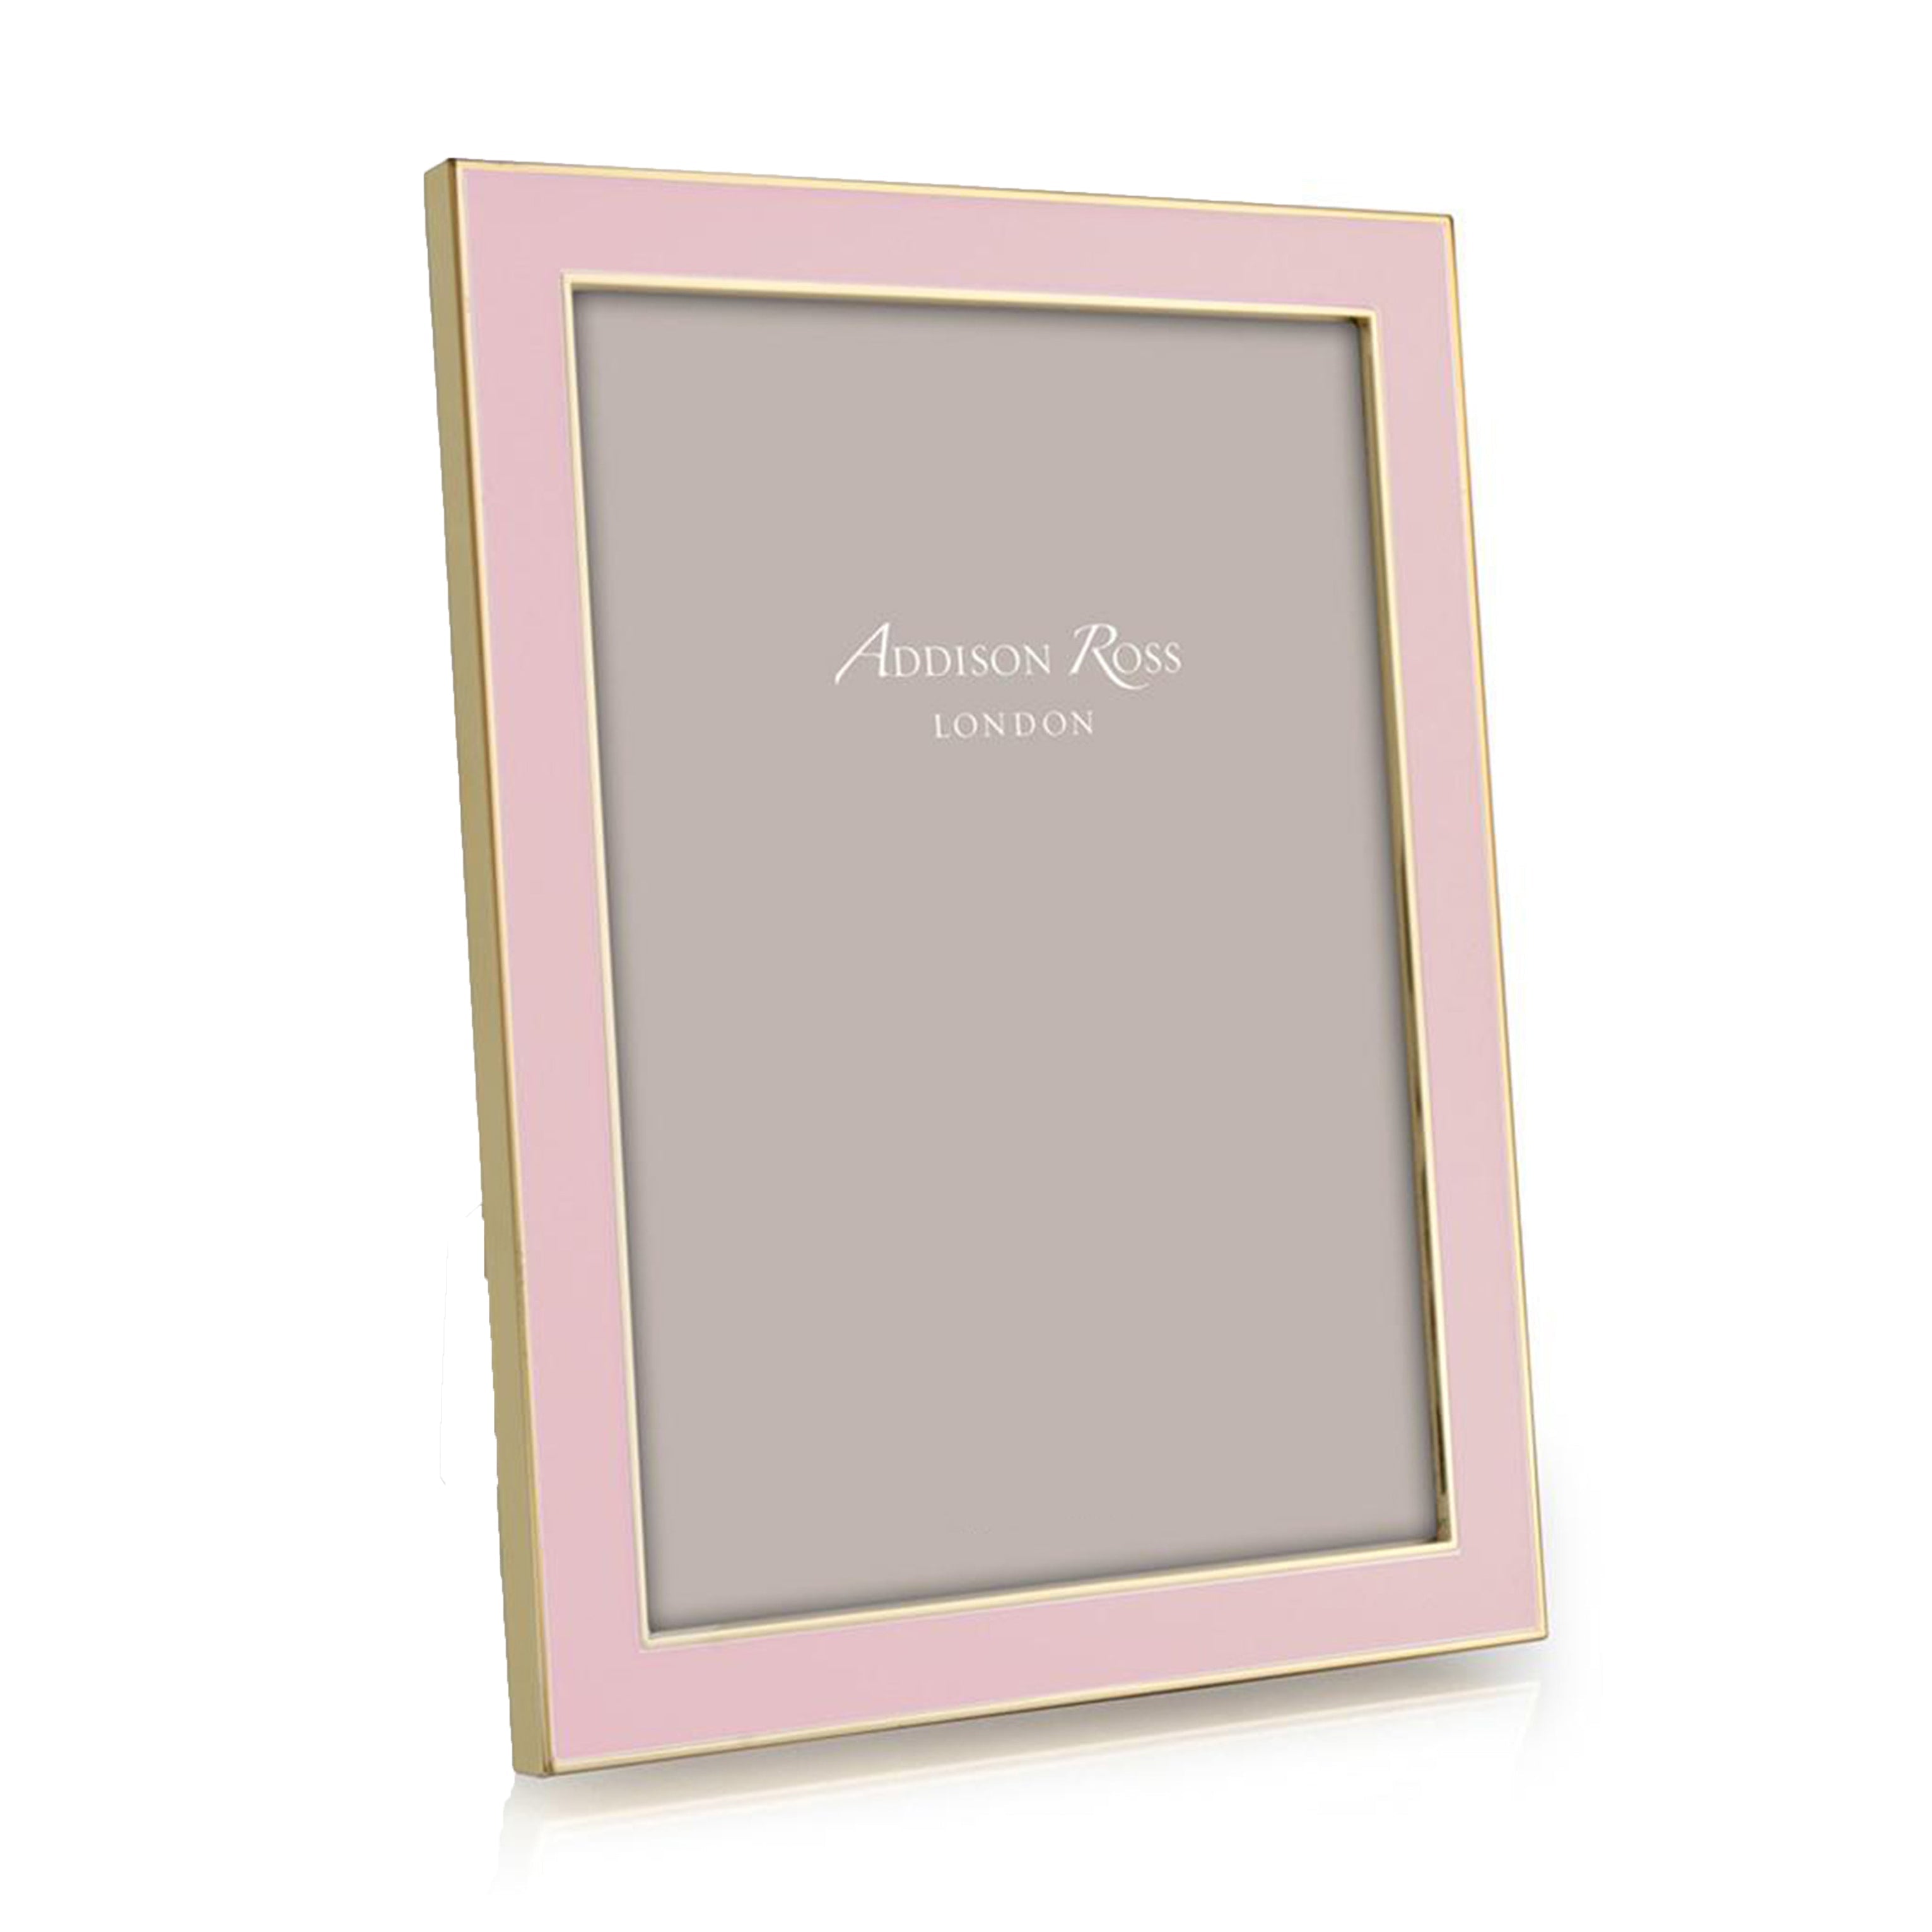 All frames by Addison Ross – Addison Ross Ltd UK